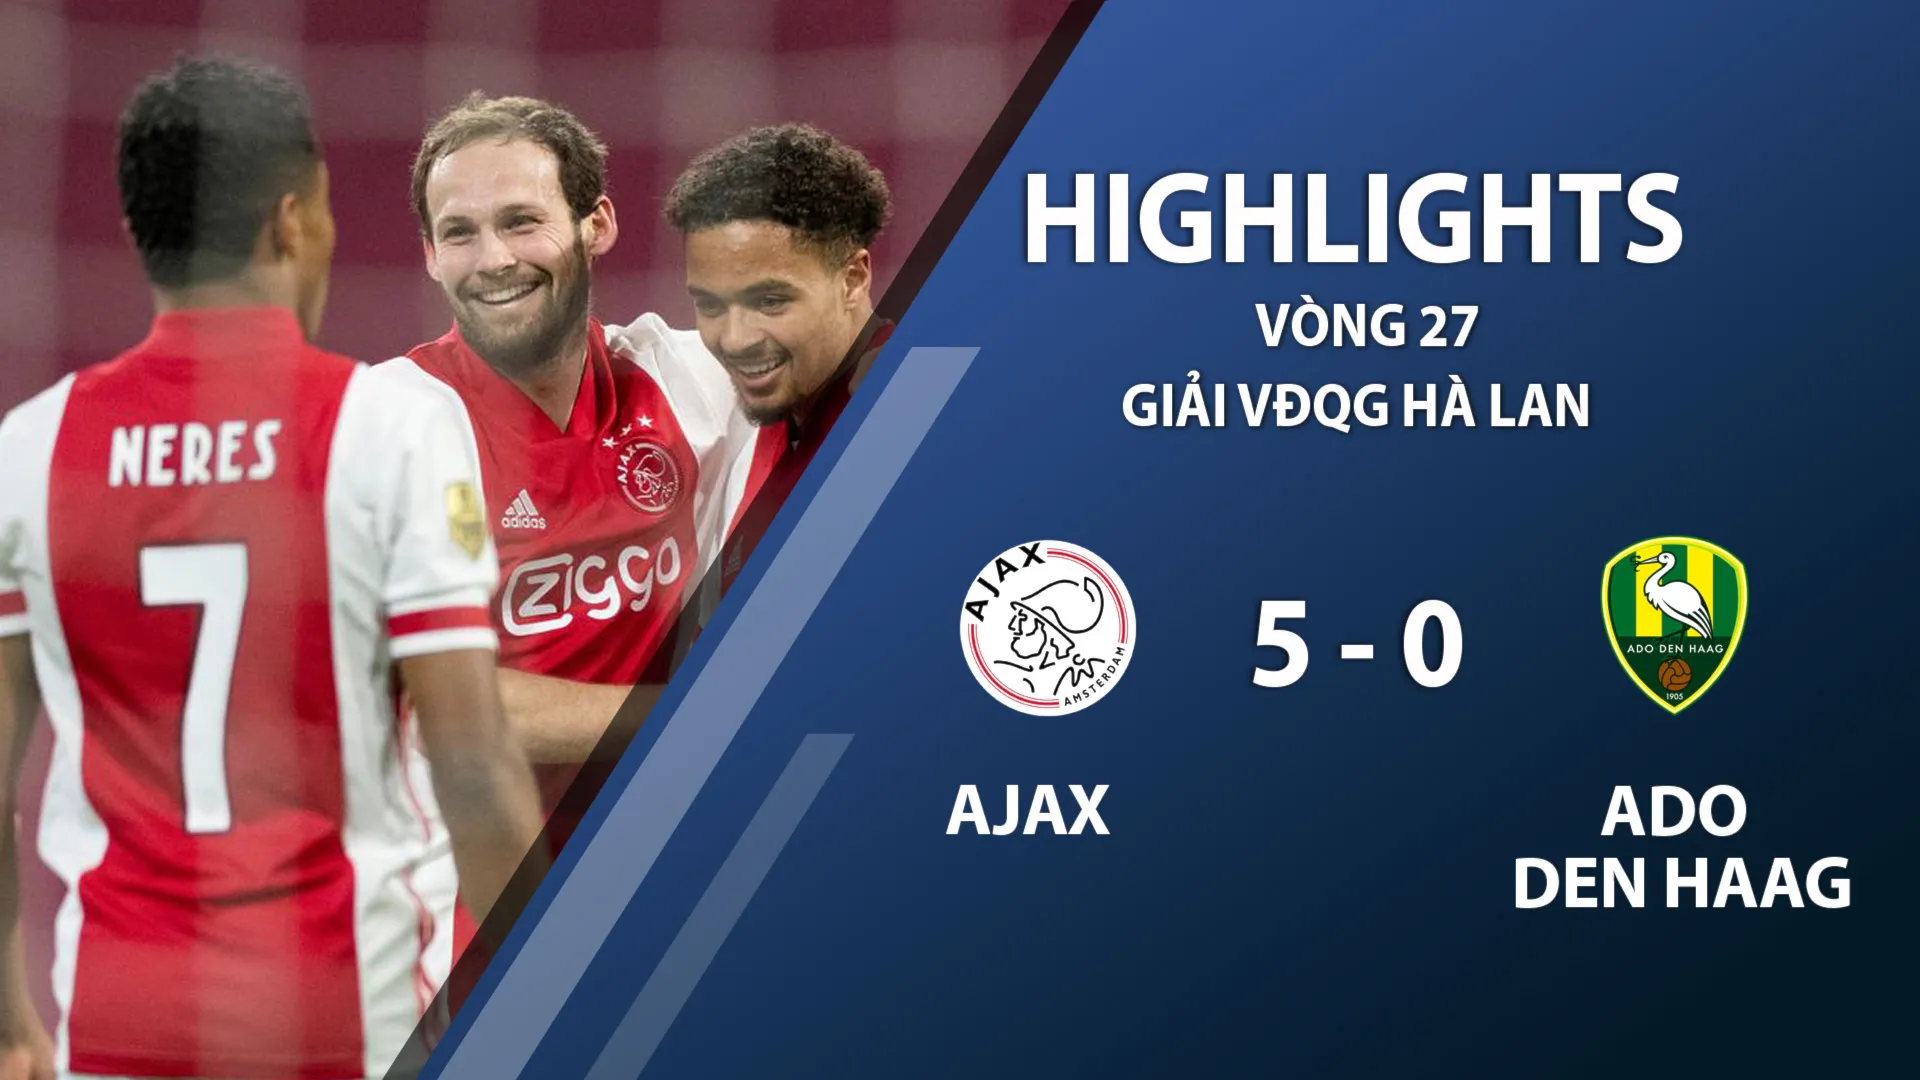 Highlights Ajax 5-0 ADO Den Haag (vòng 27 giải VĐQG Hà Lan 2020/21)